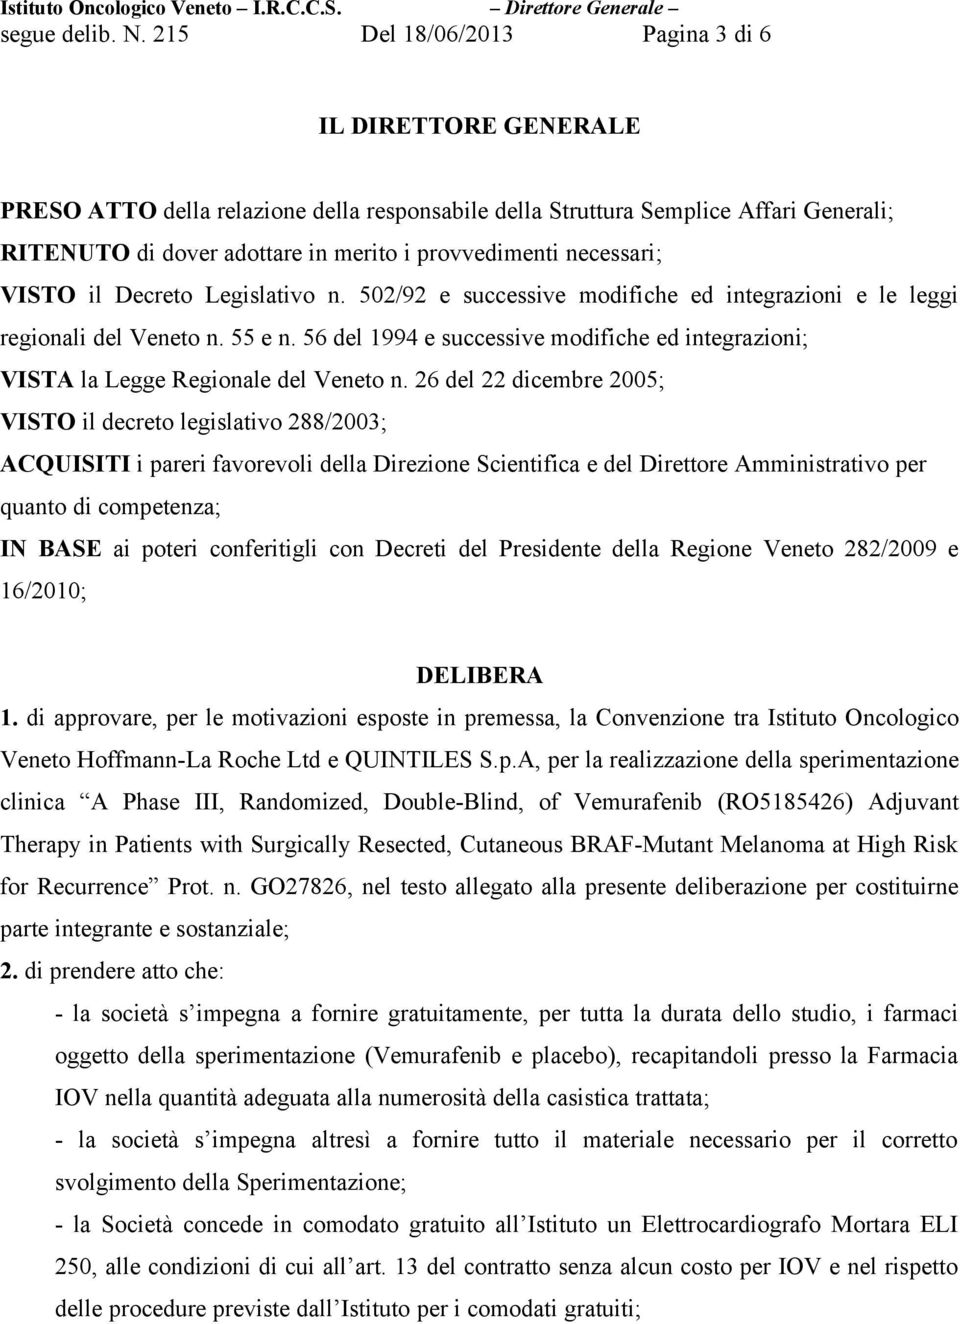 necessari; VISTO il Decreto Legislativo n. 502/92 e successive modifiche ed integrazioni e le leggi regionali del Veneto n. 55 e n.